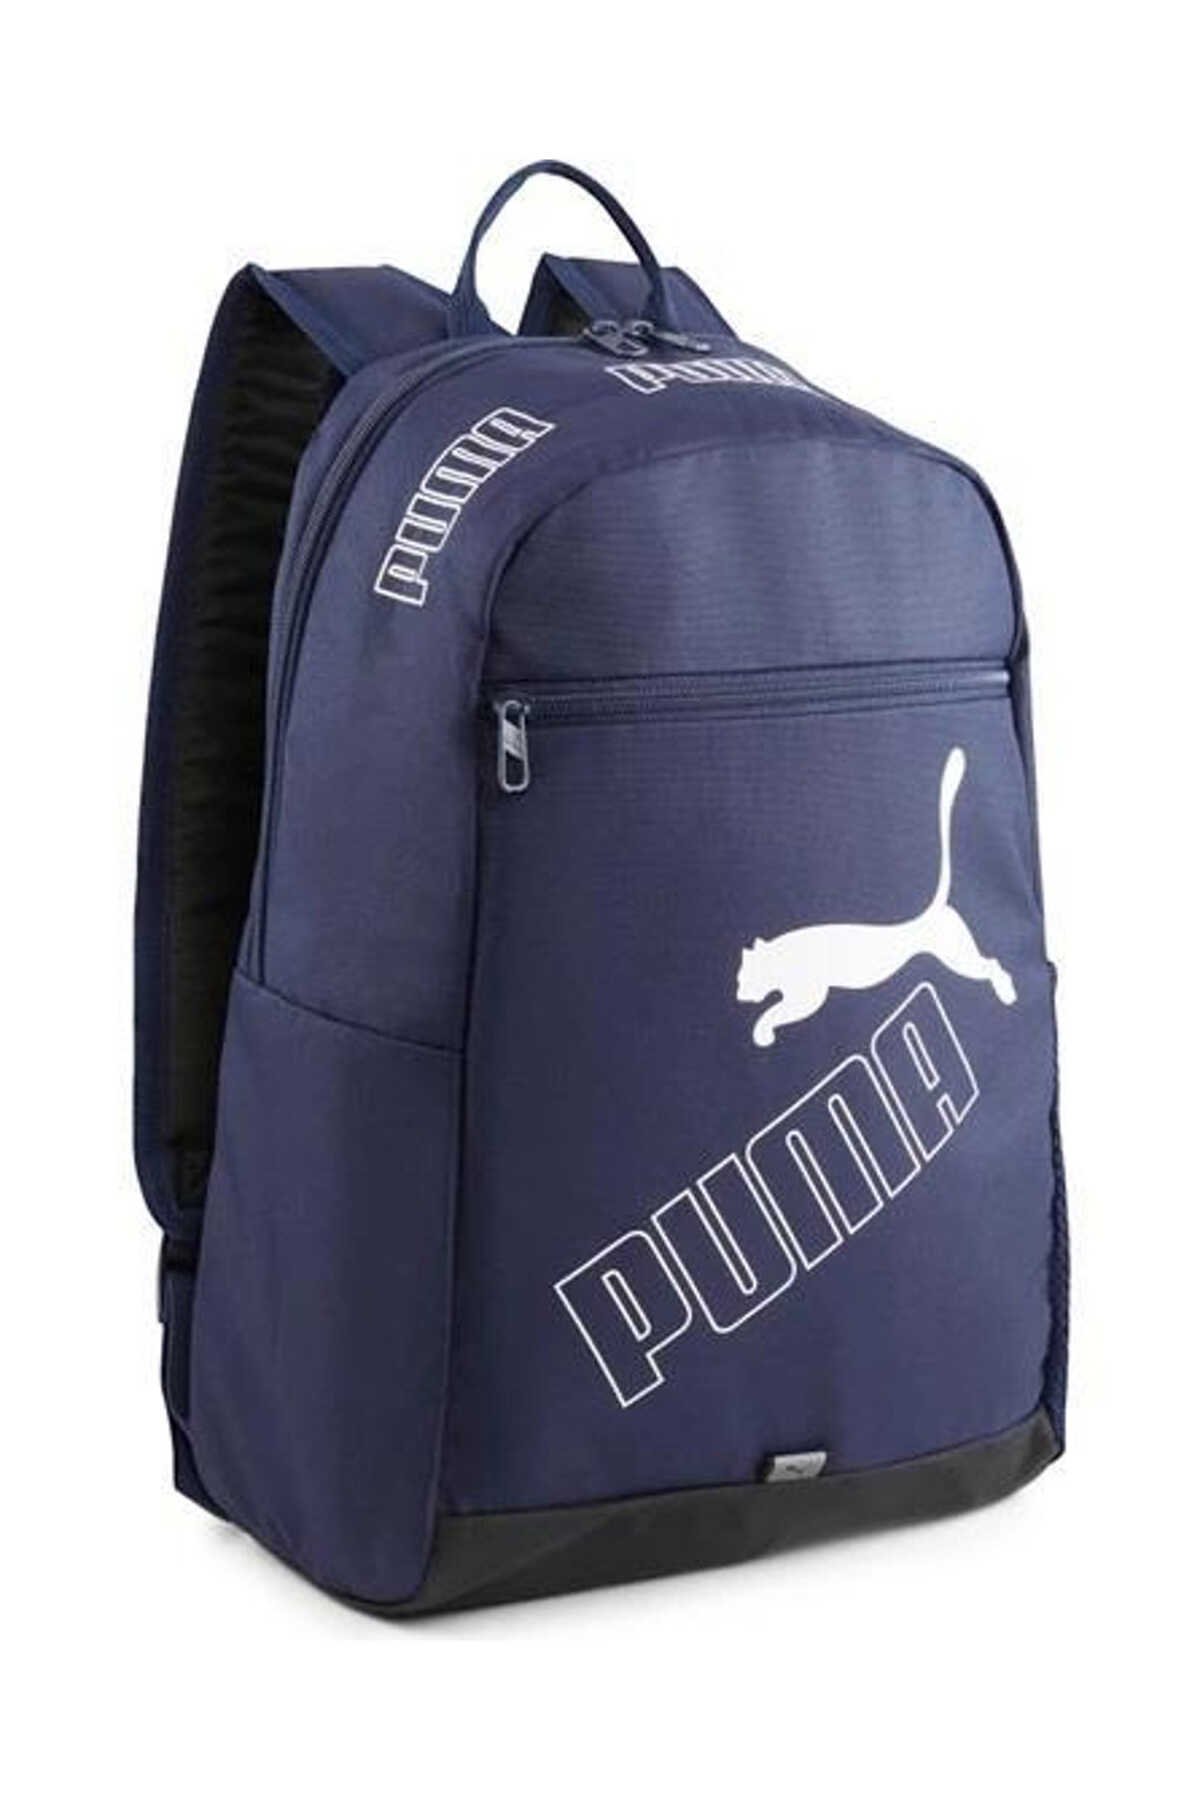 Puma - Puma Phase Backpack II Unisex Sırt Çantası Lacivert